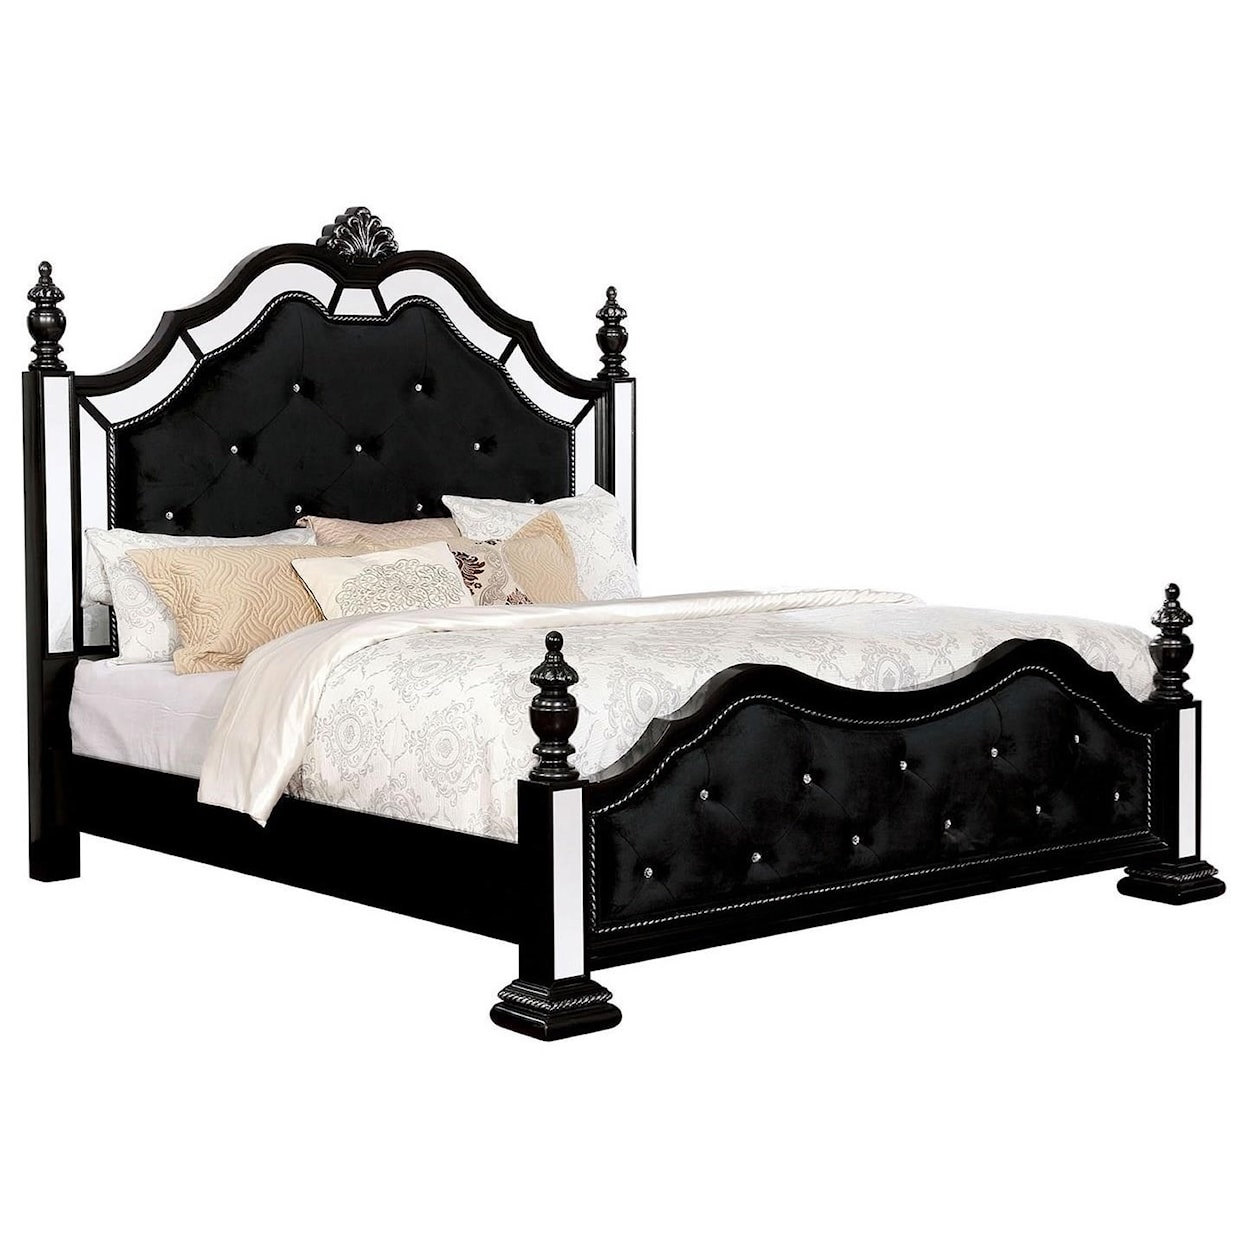 Furniture of America Azha Queen Bed